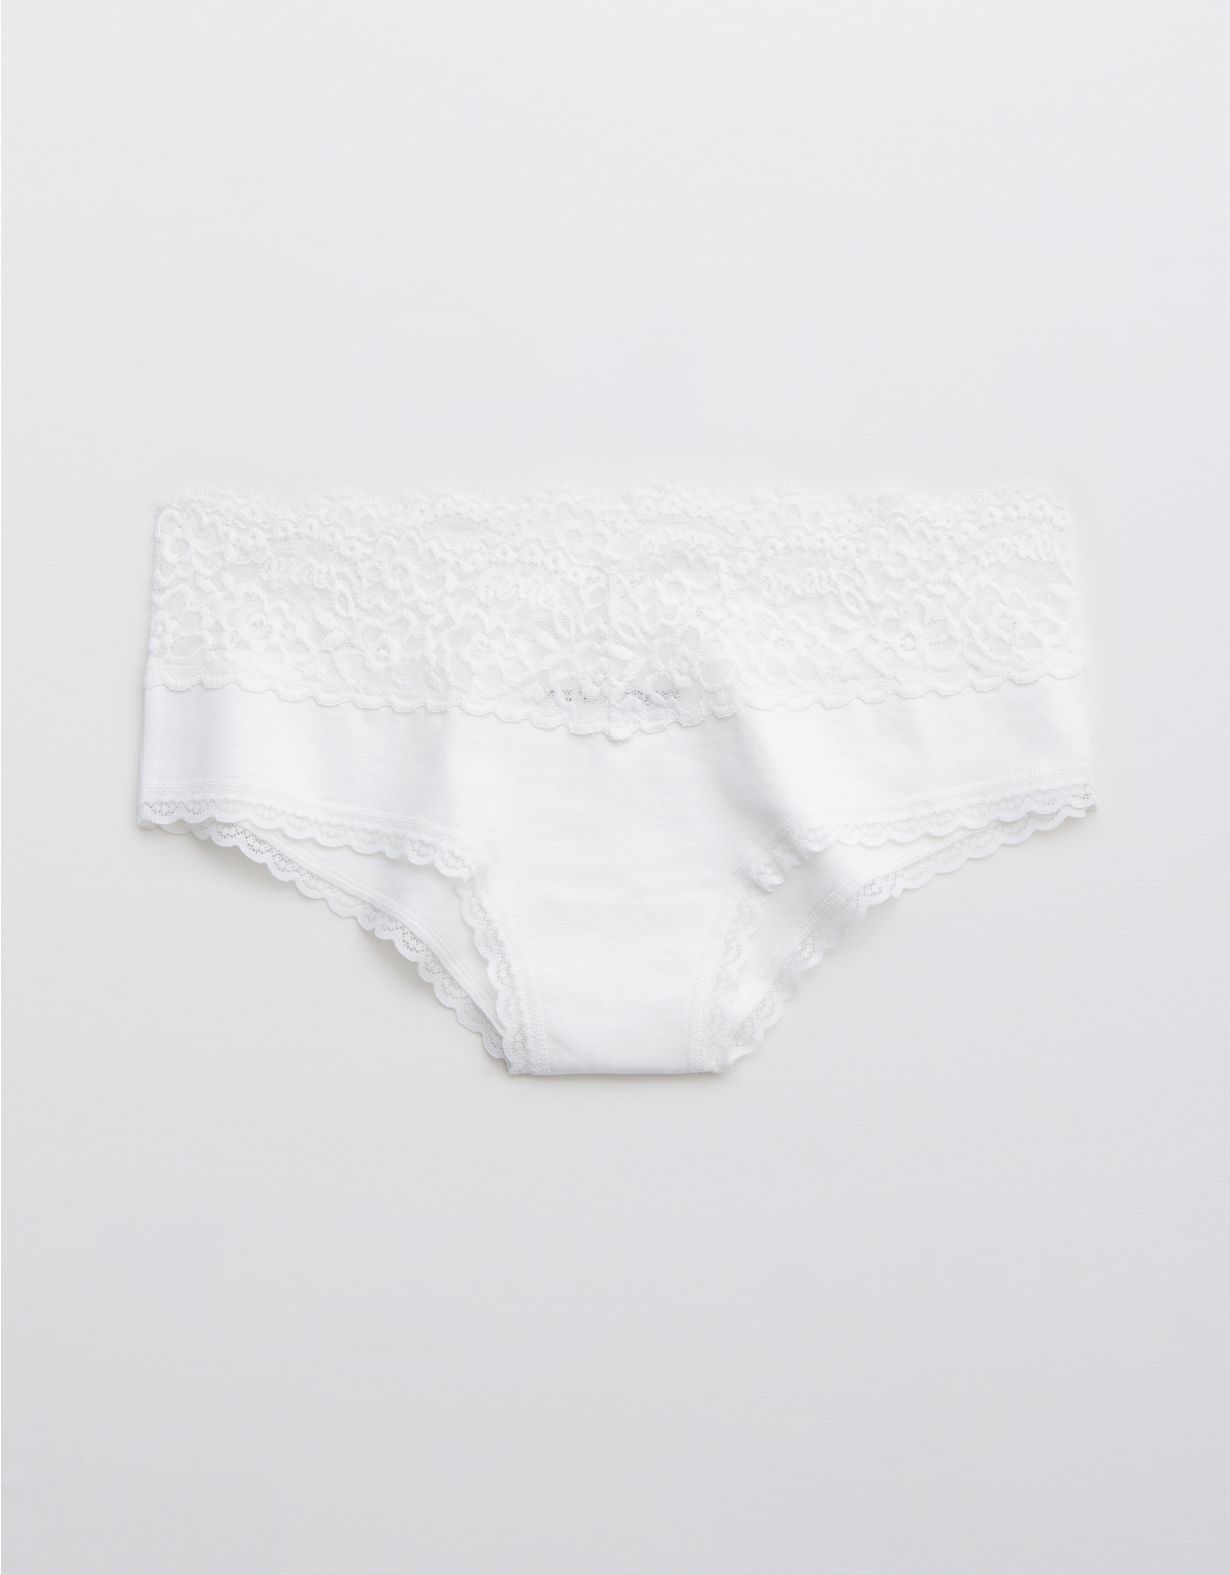 Aerie Cotton Eyelash Lace Cheeky Underwear